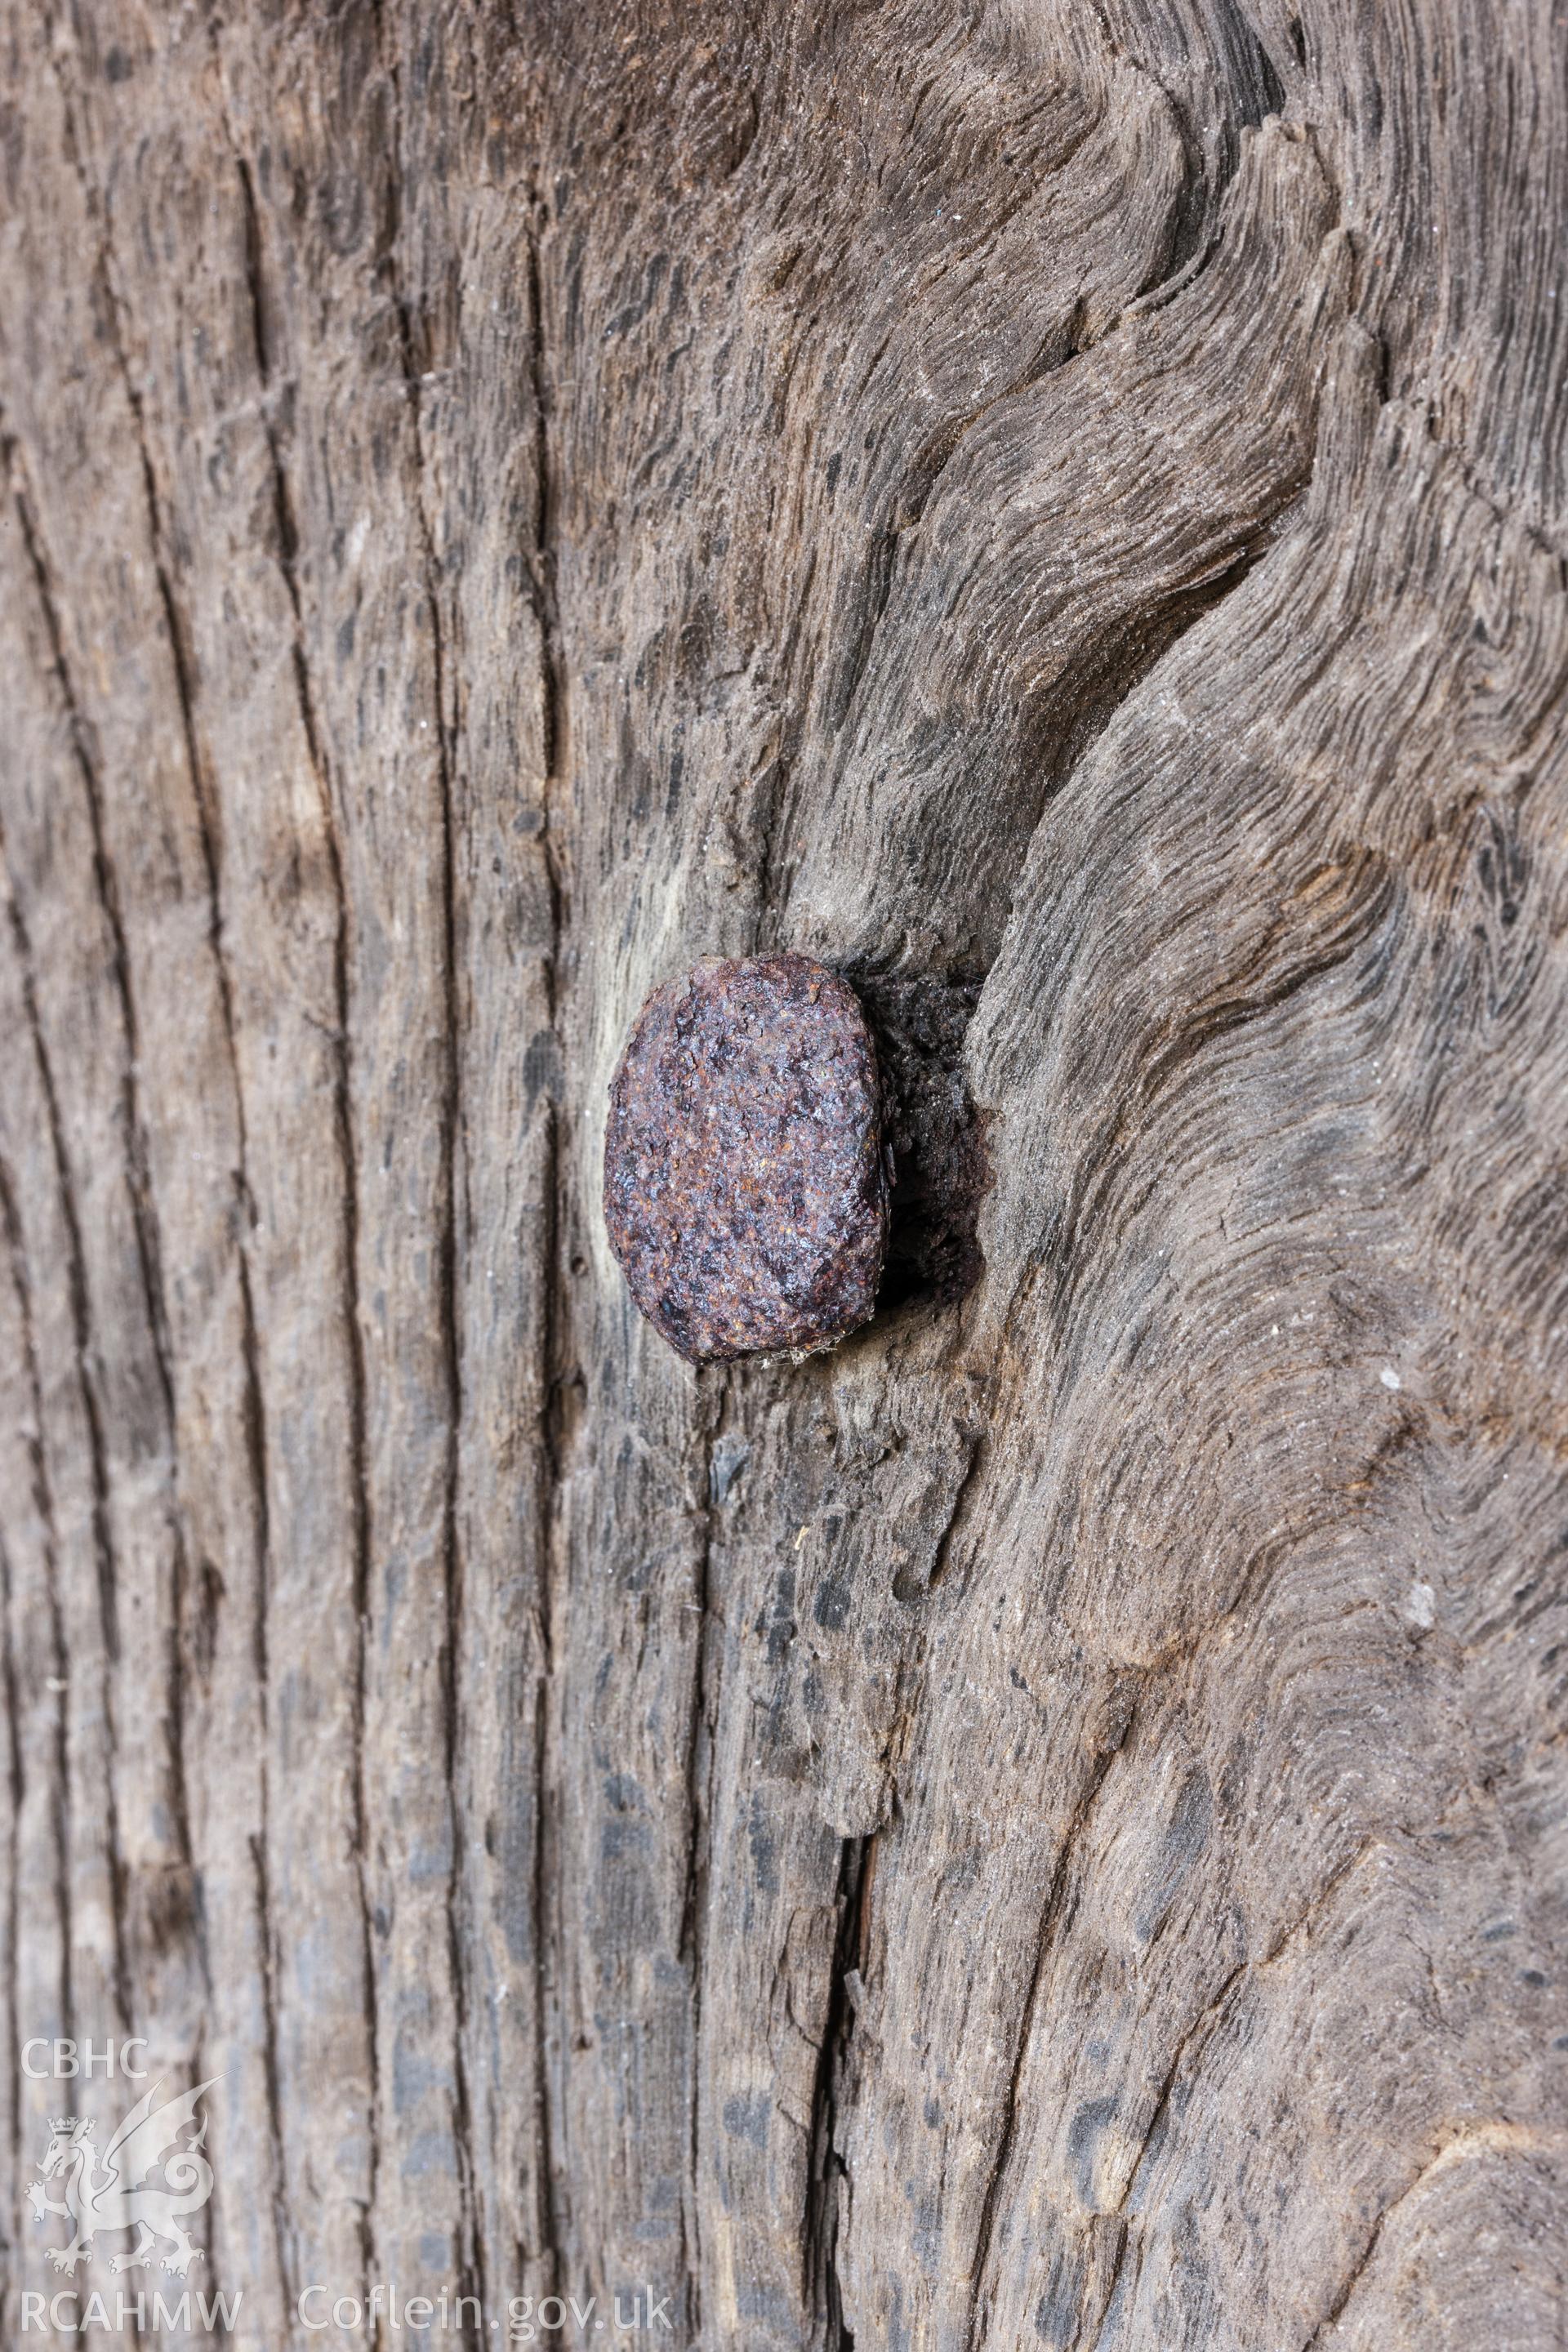 Detail of nail, spacing behind nail possibly for metal sheeting